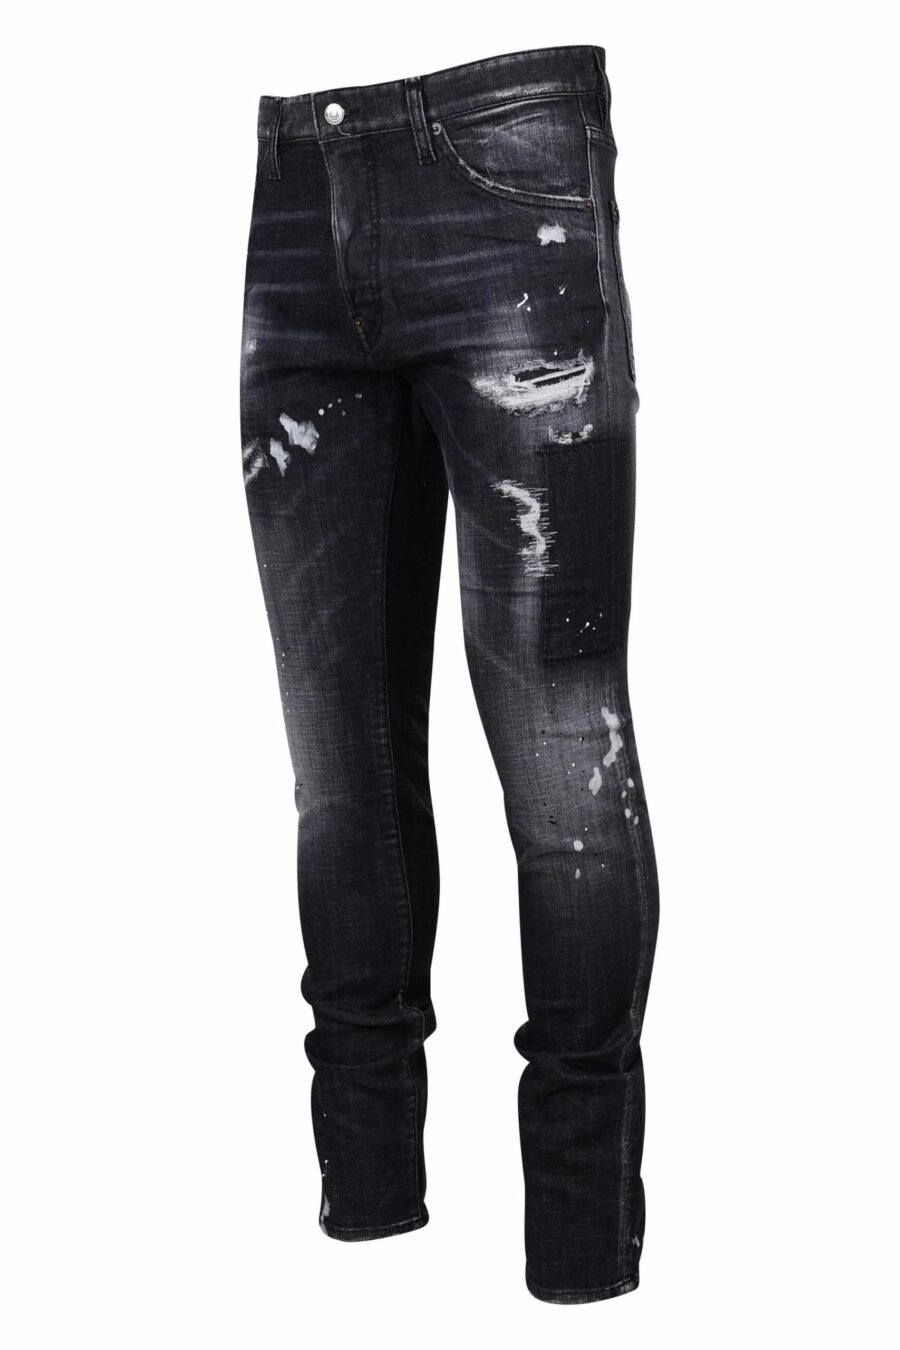 Schwarze "cool guy jean" Jeans mit Rissen und ausgefranst - 8054148300753 1 skaliert